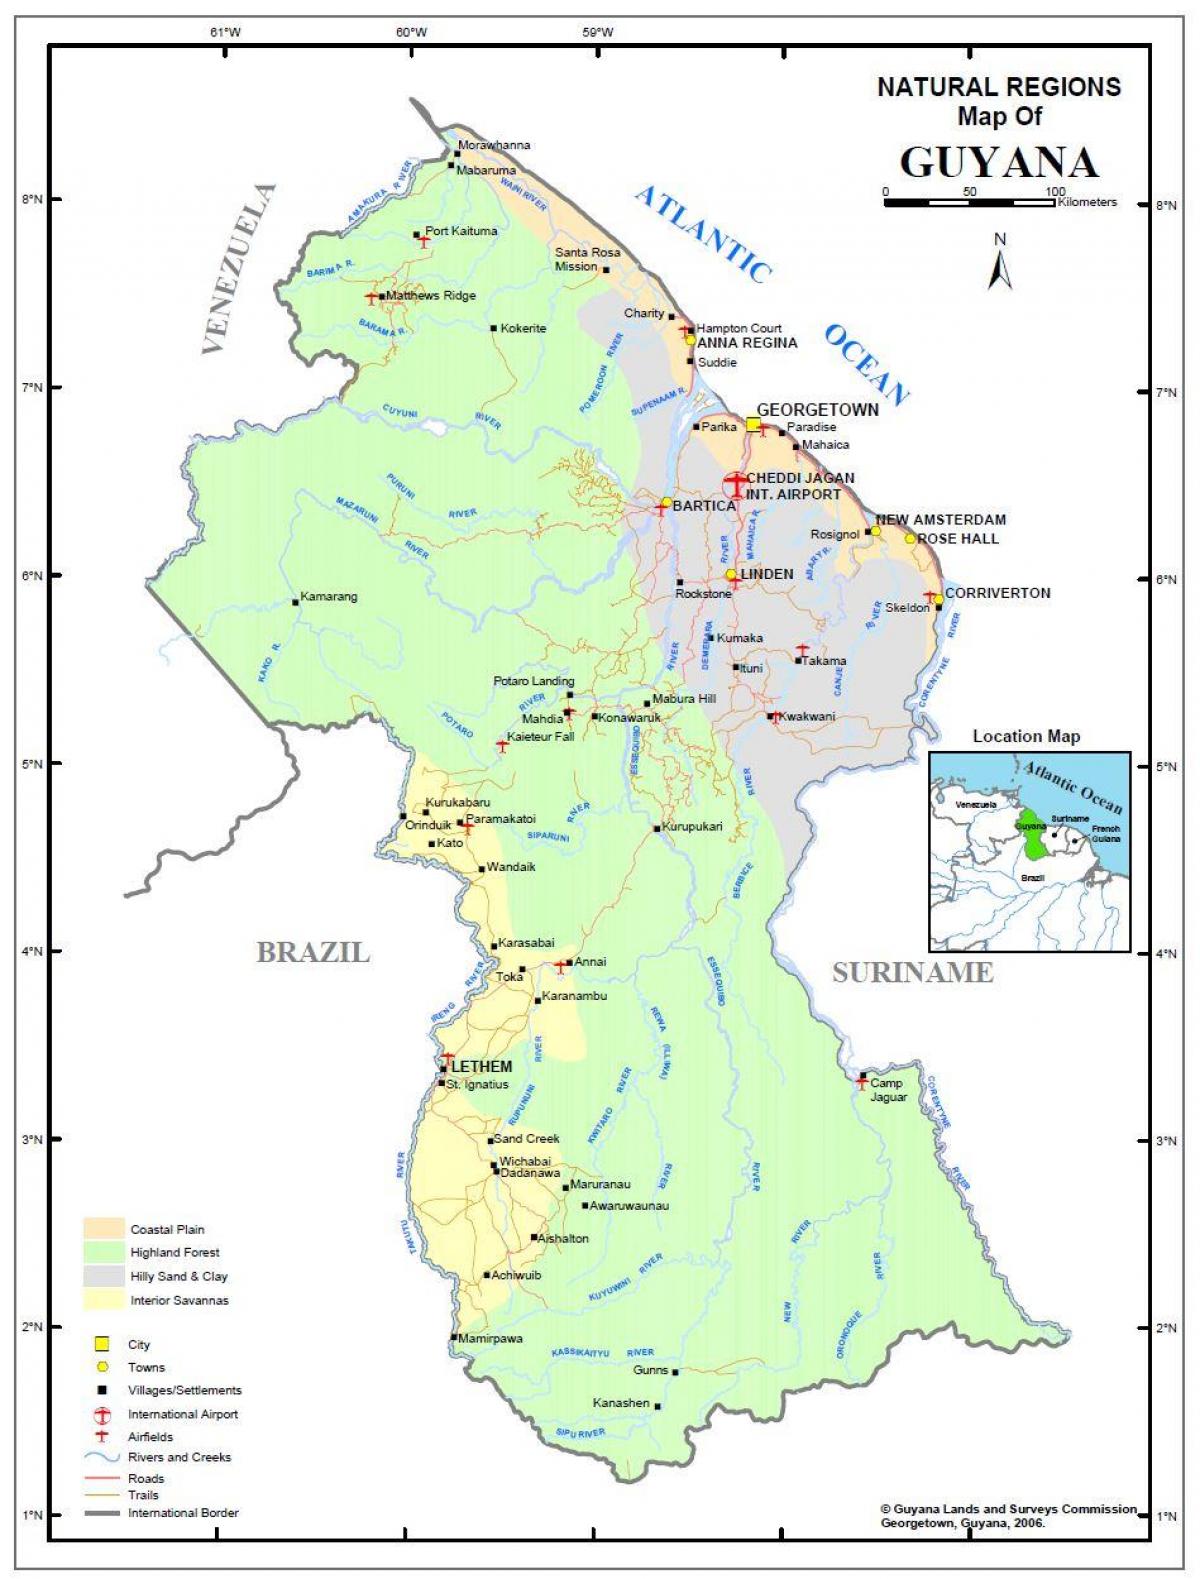 térkép Guyana mutatja a természeti erőforrások